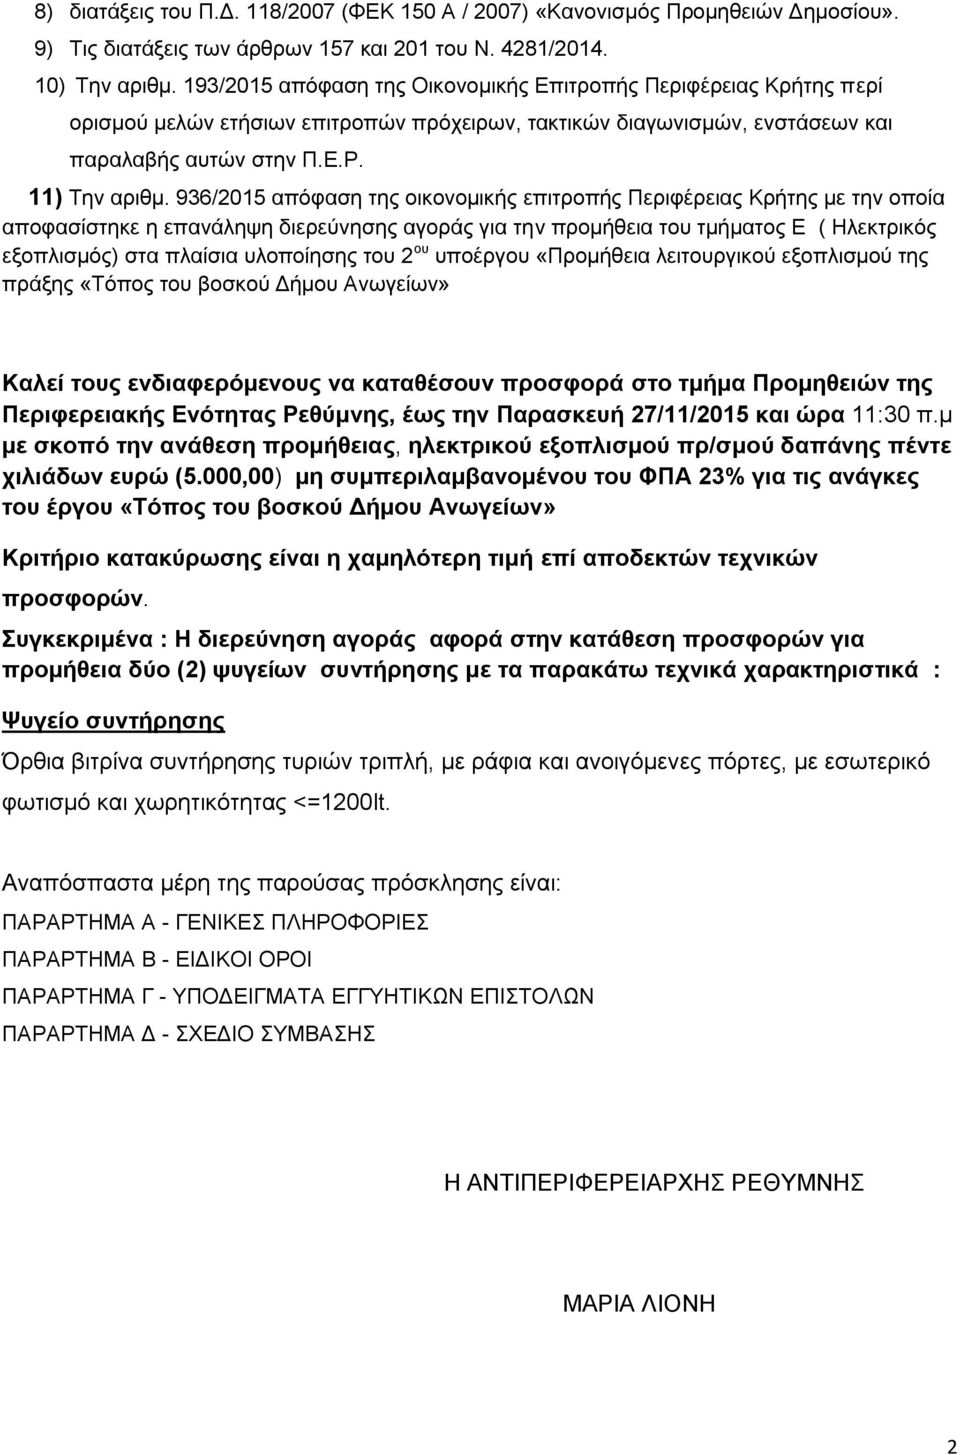 936/2015 απόφαση της οικονομικής επιτροπής Περιφέρειας Κρήτης με την οποία αποφασίστηκε η επανάληψη διερεύνησης αγοράς για την προμήθεια του τμήματος Ε ( Ηλεκτρικός εξοπλισμός) στα πλαίσια υλοποίησης